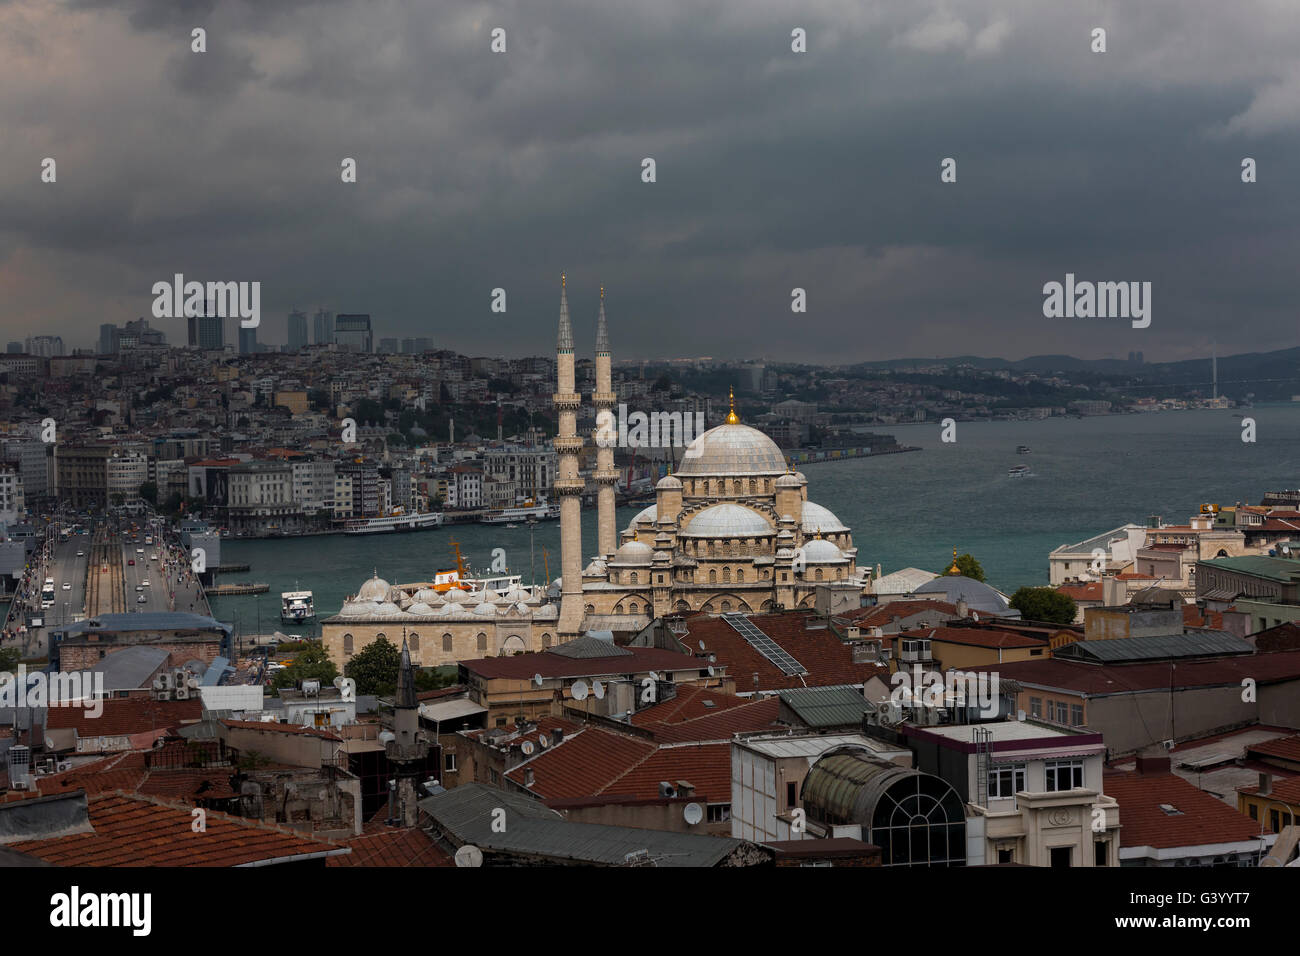 Nuova moschea di Istanbul con un faretto su di esso. Foto Stock